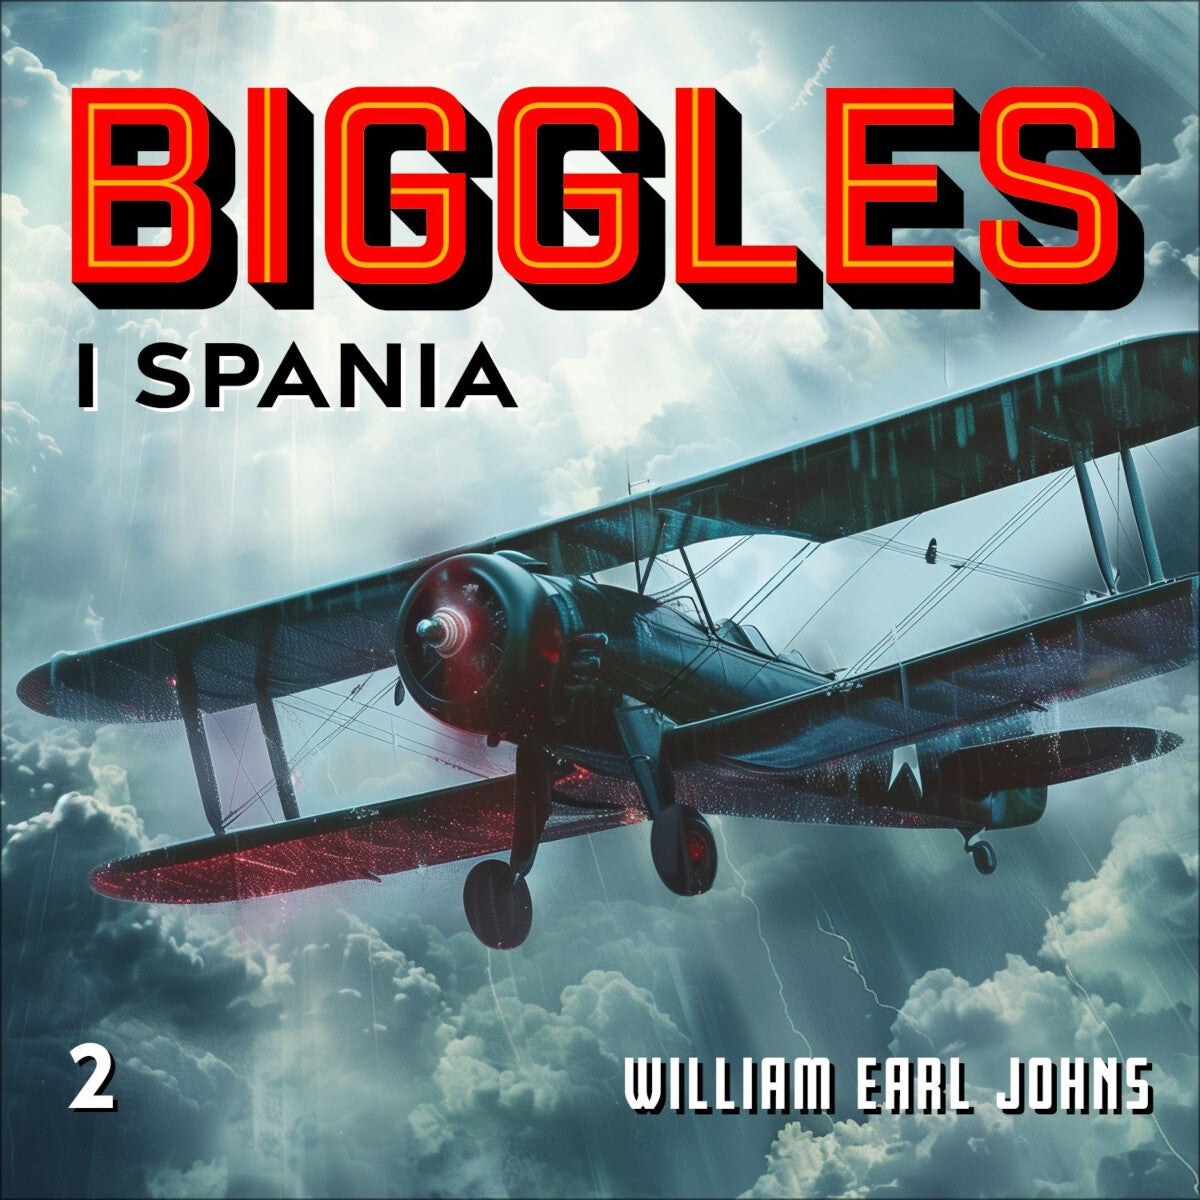 Bilde av Biggles I Spania Av W.e. Johns